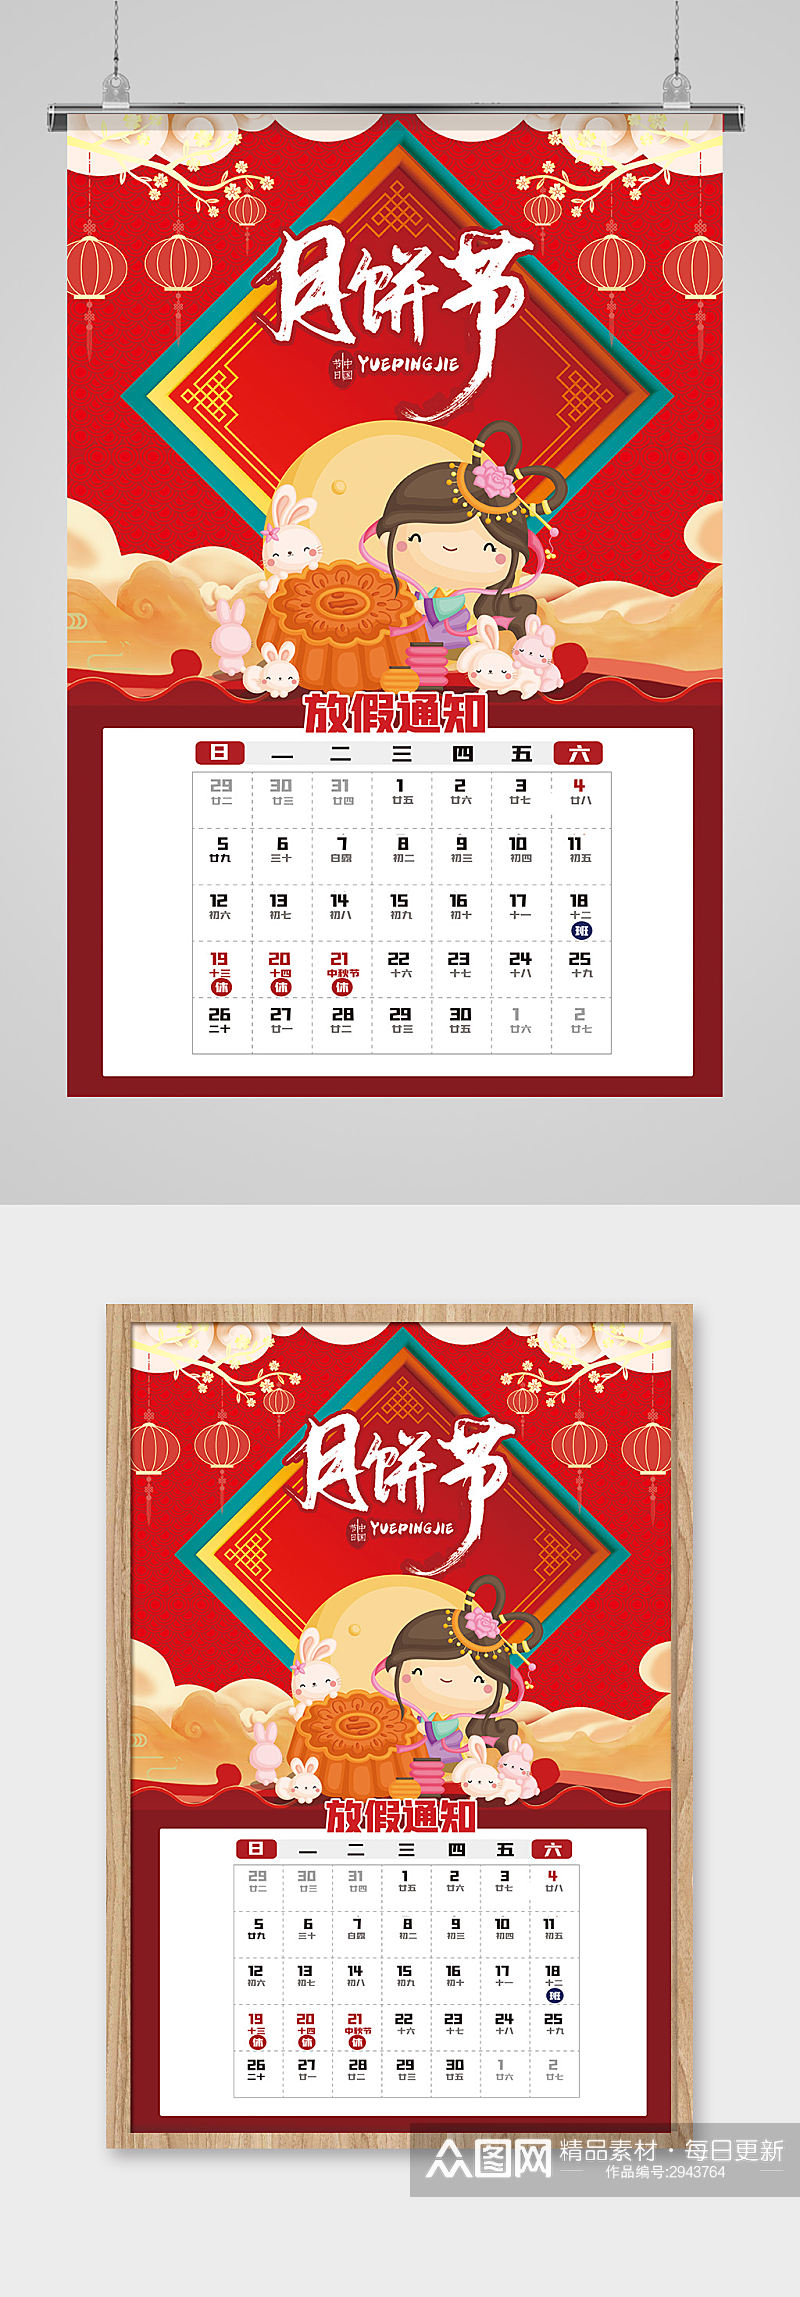 红色喜庆月饼节海报设计素材